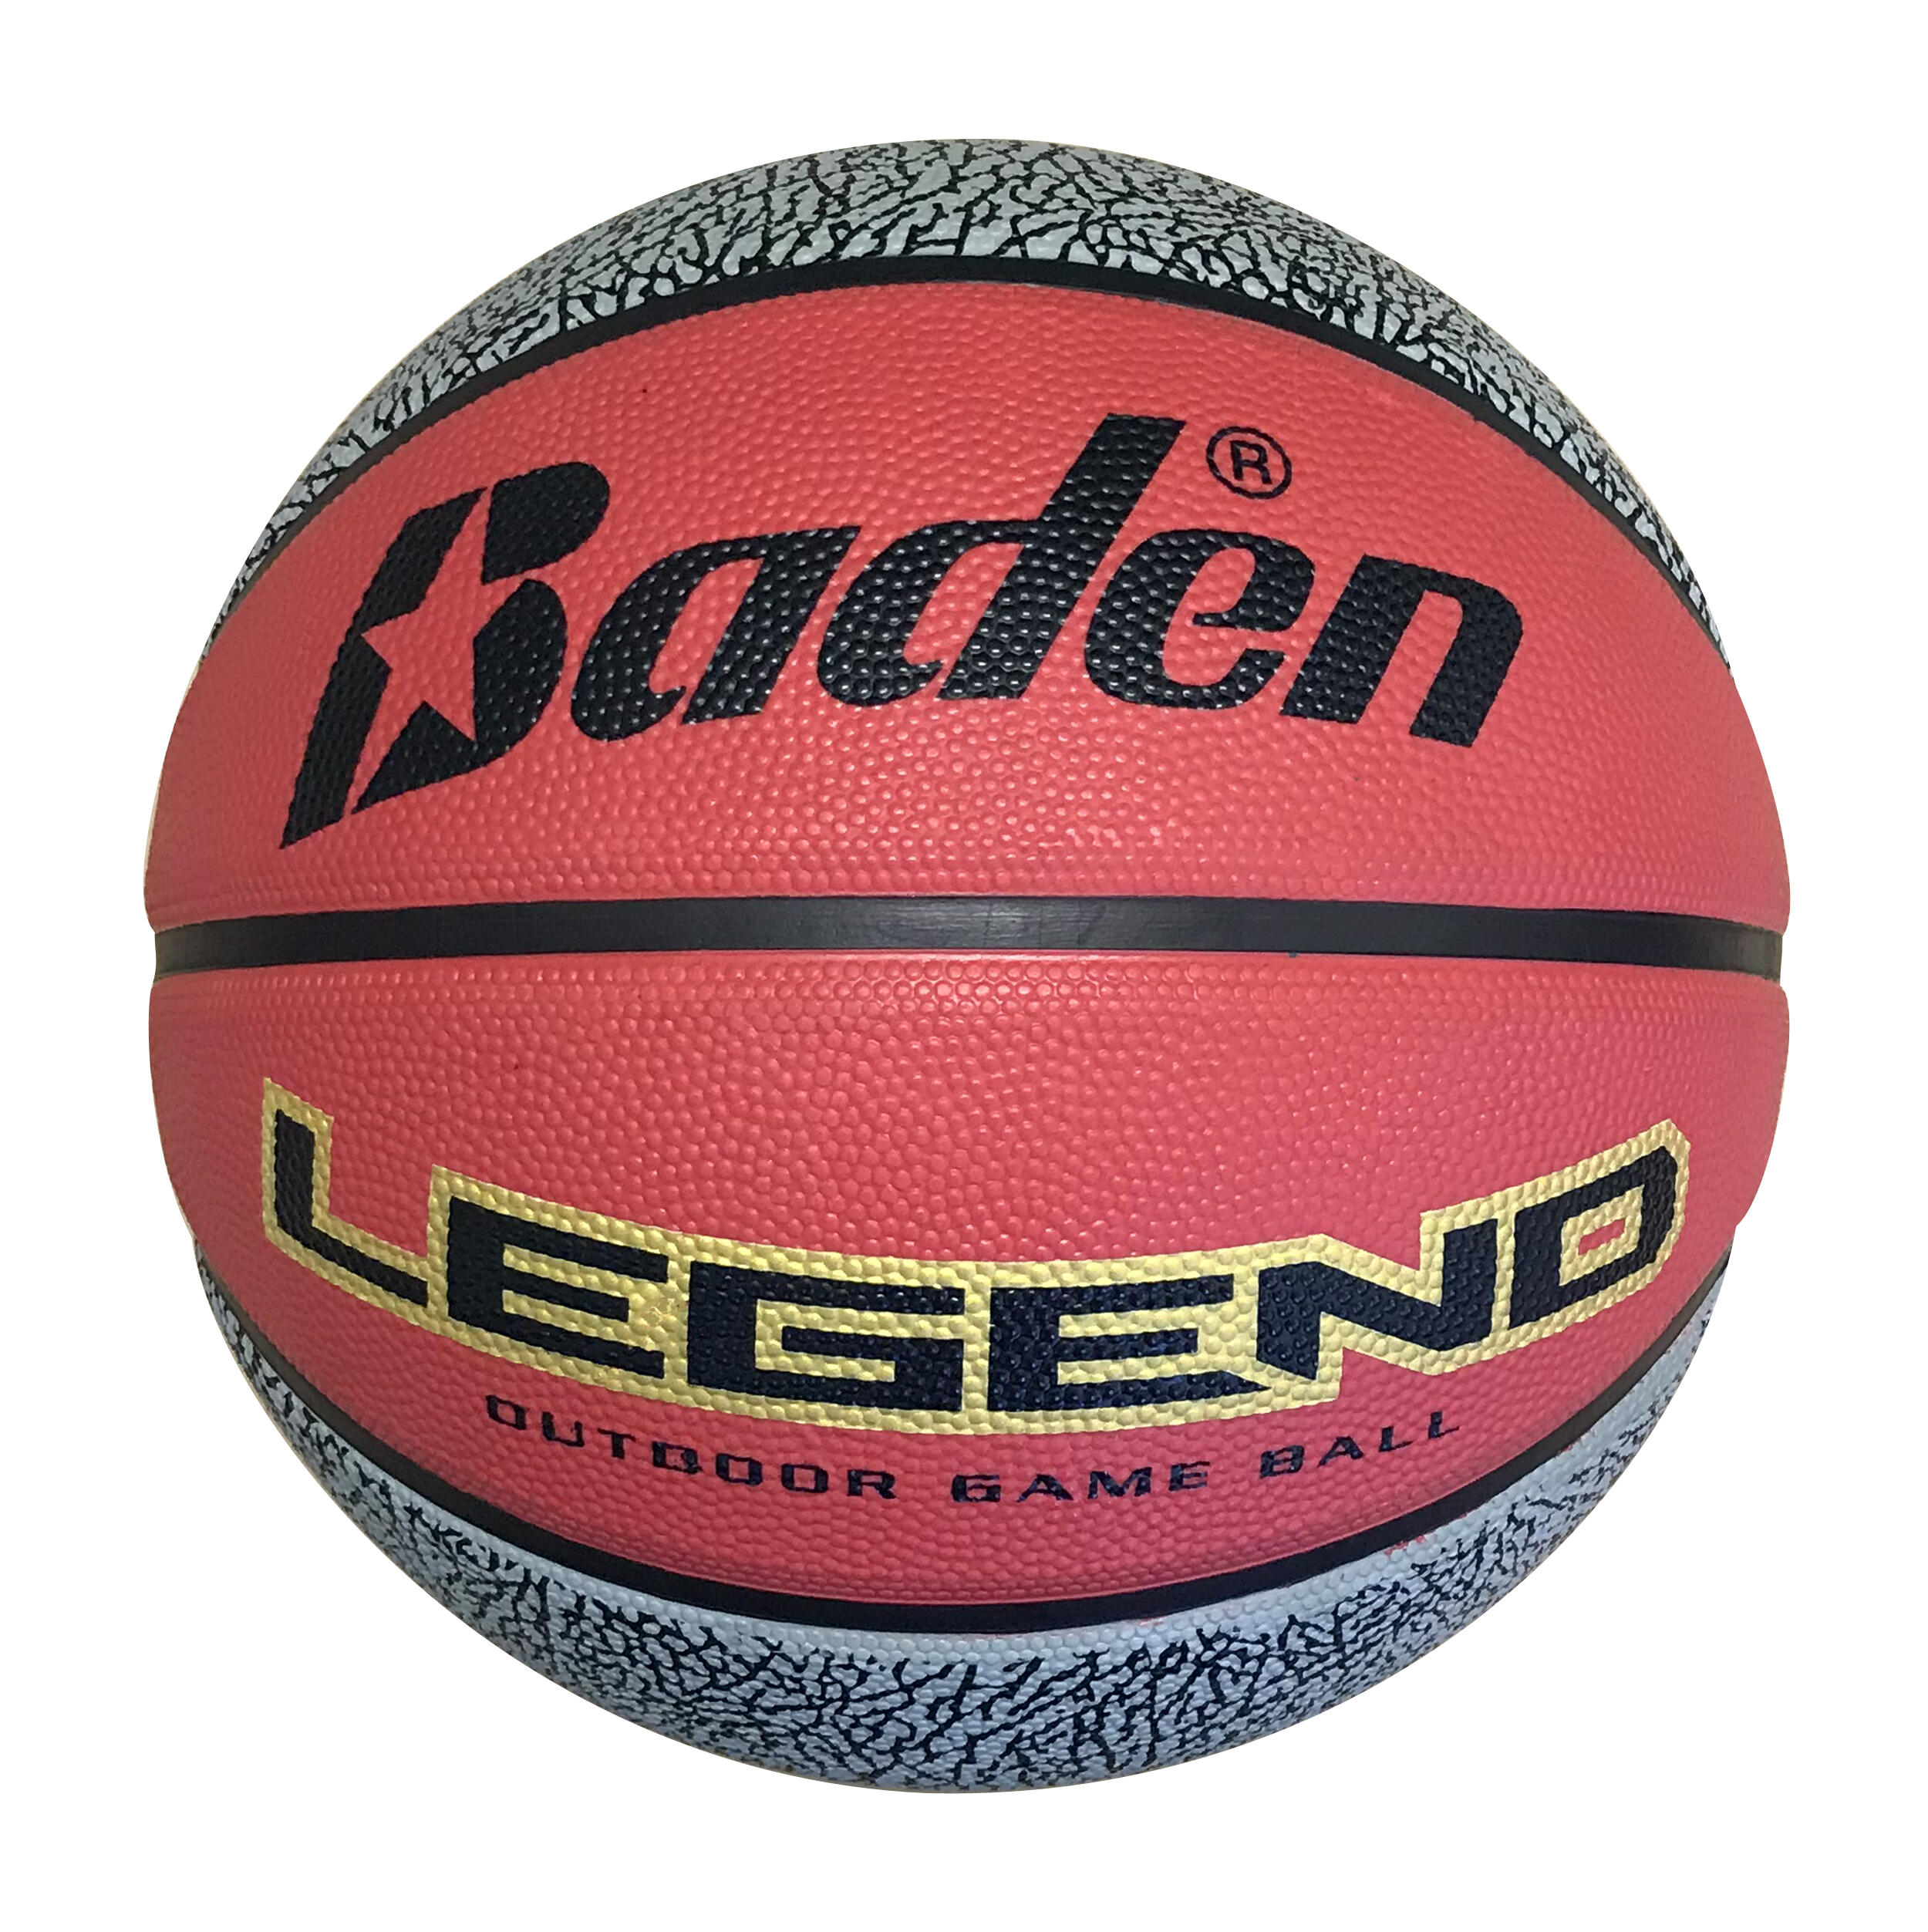 Baden Legend Size 7 Basketball - Red / Black 1/5